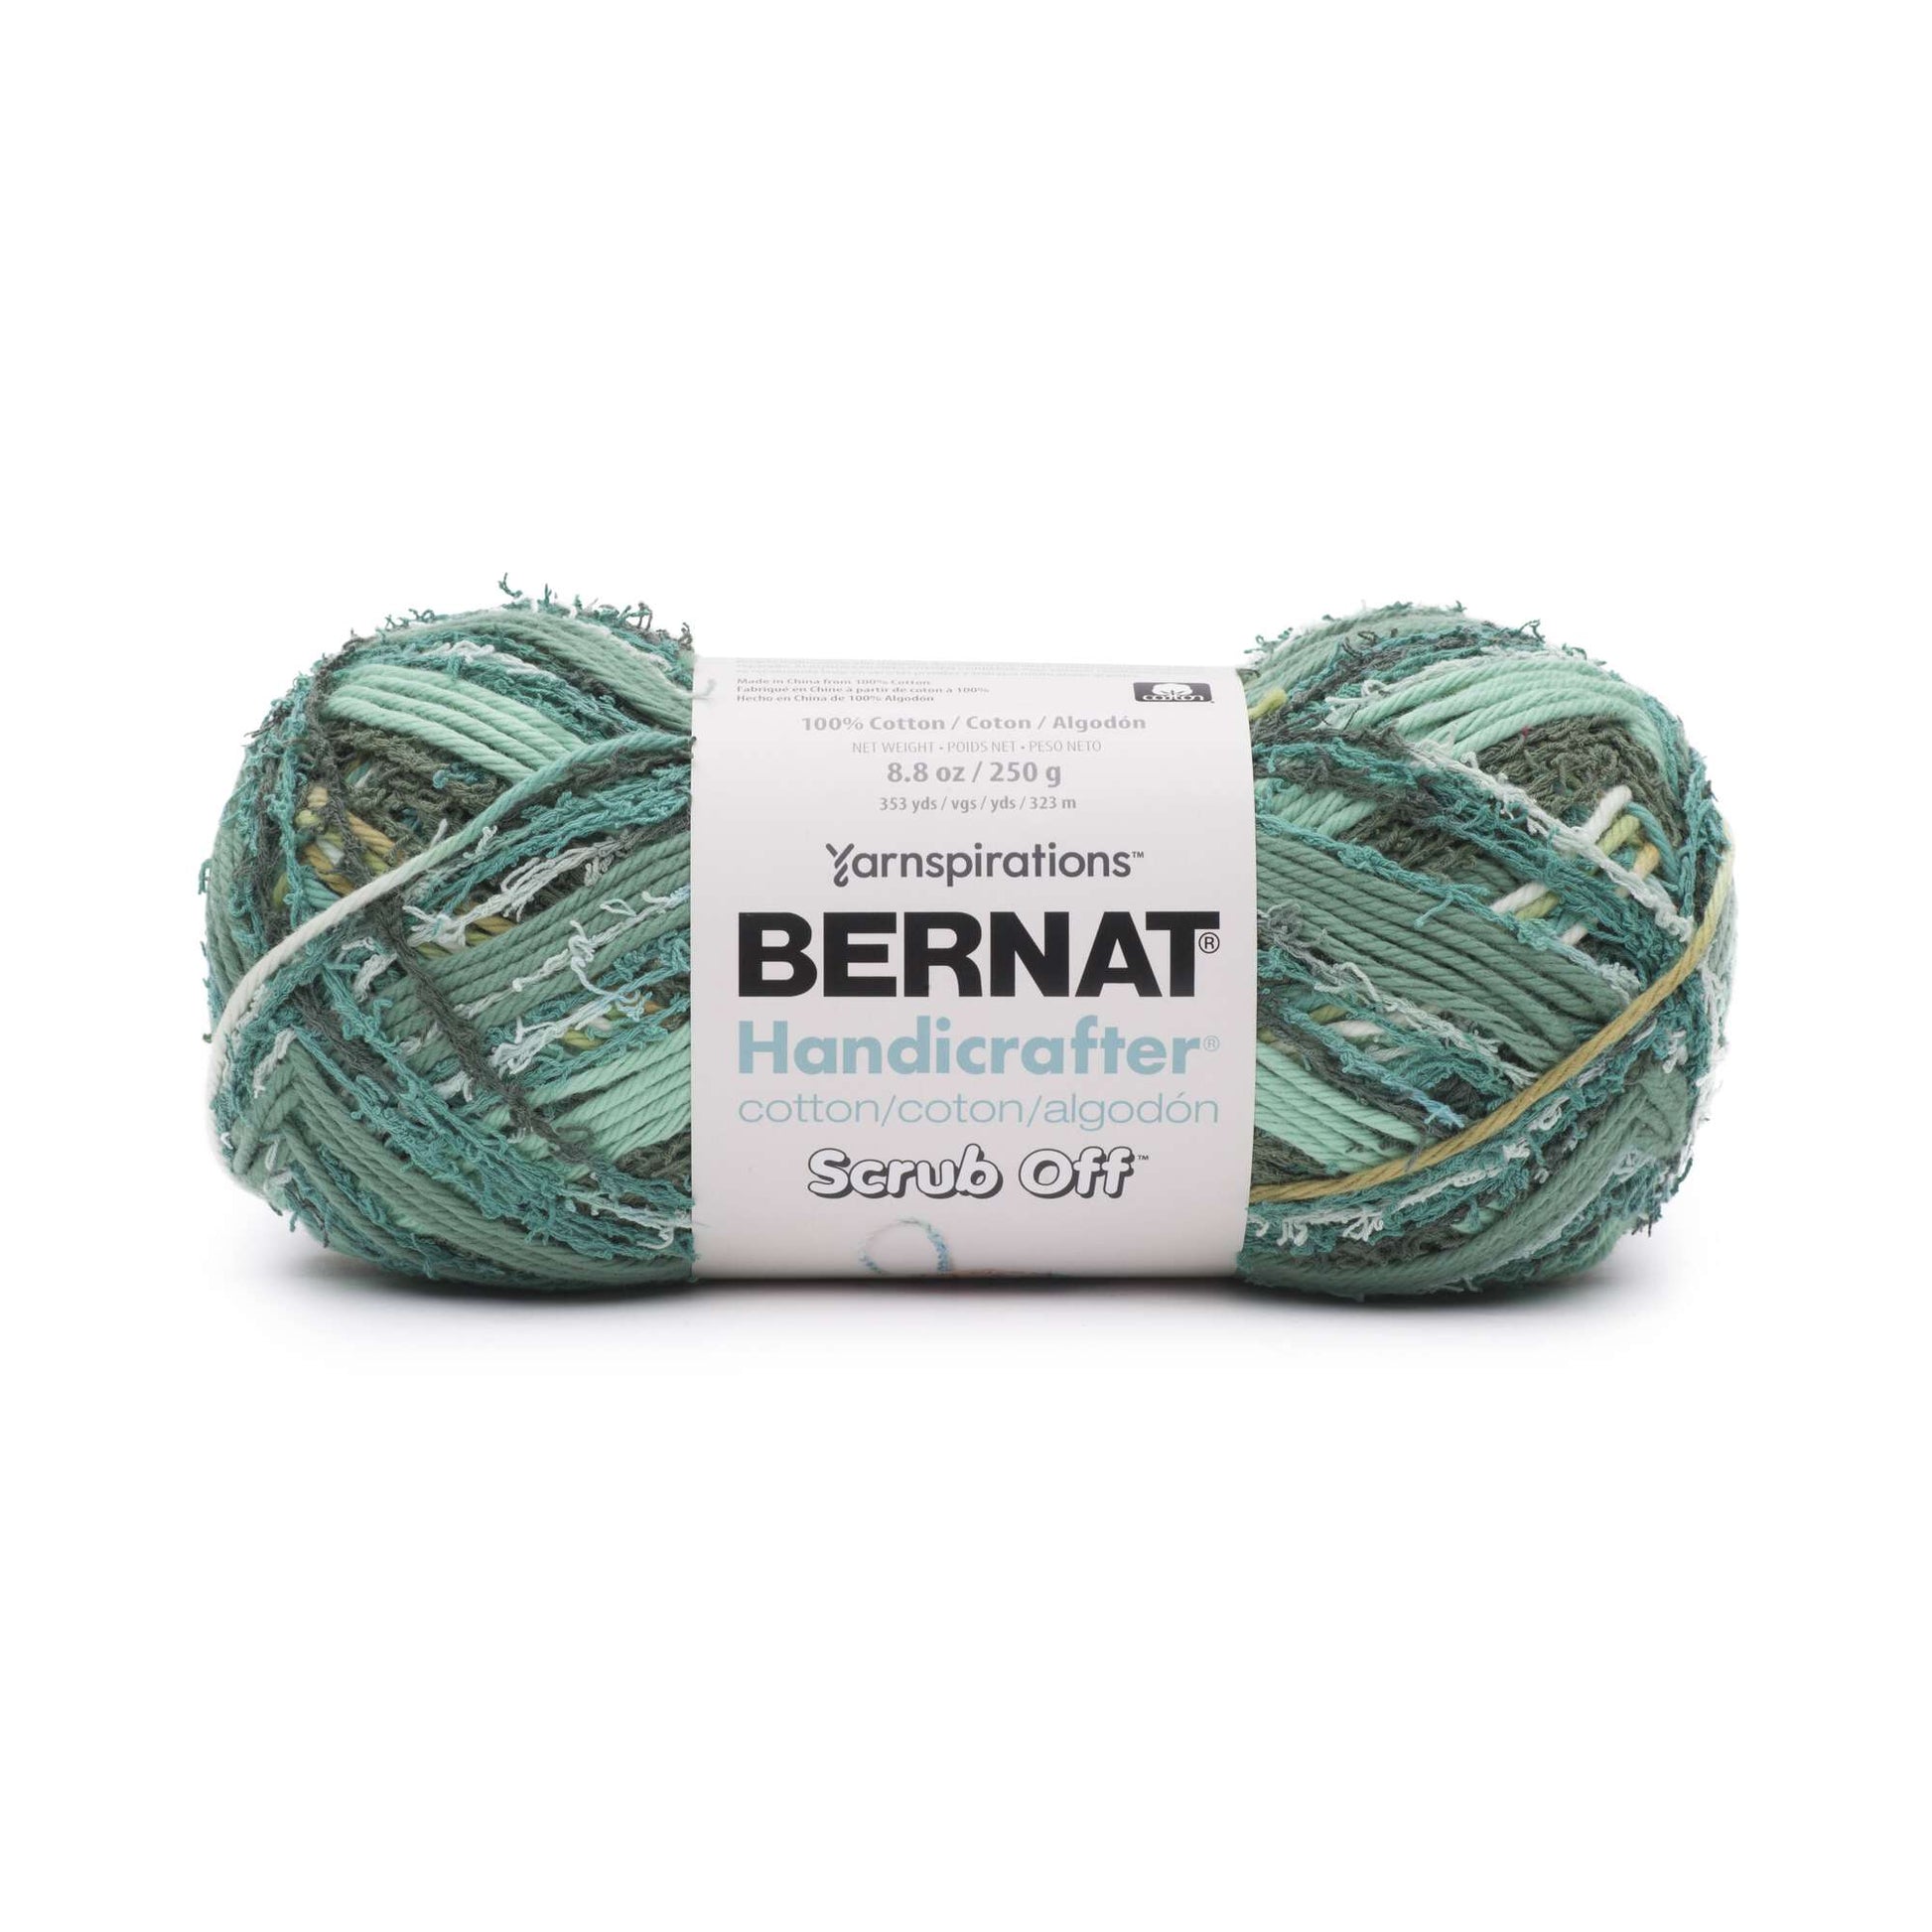 Bernat Handicrafter Scrub Off Yarn - Discontinued Shades